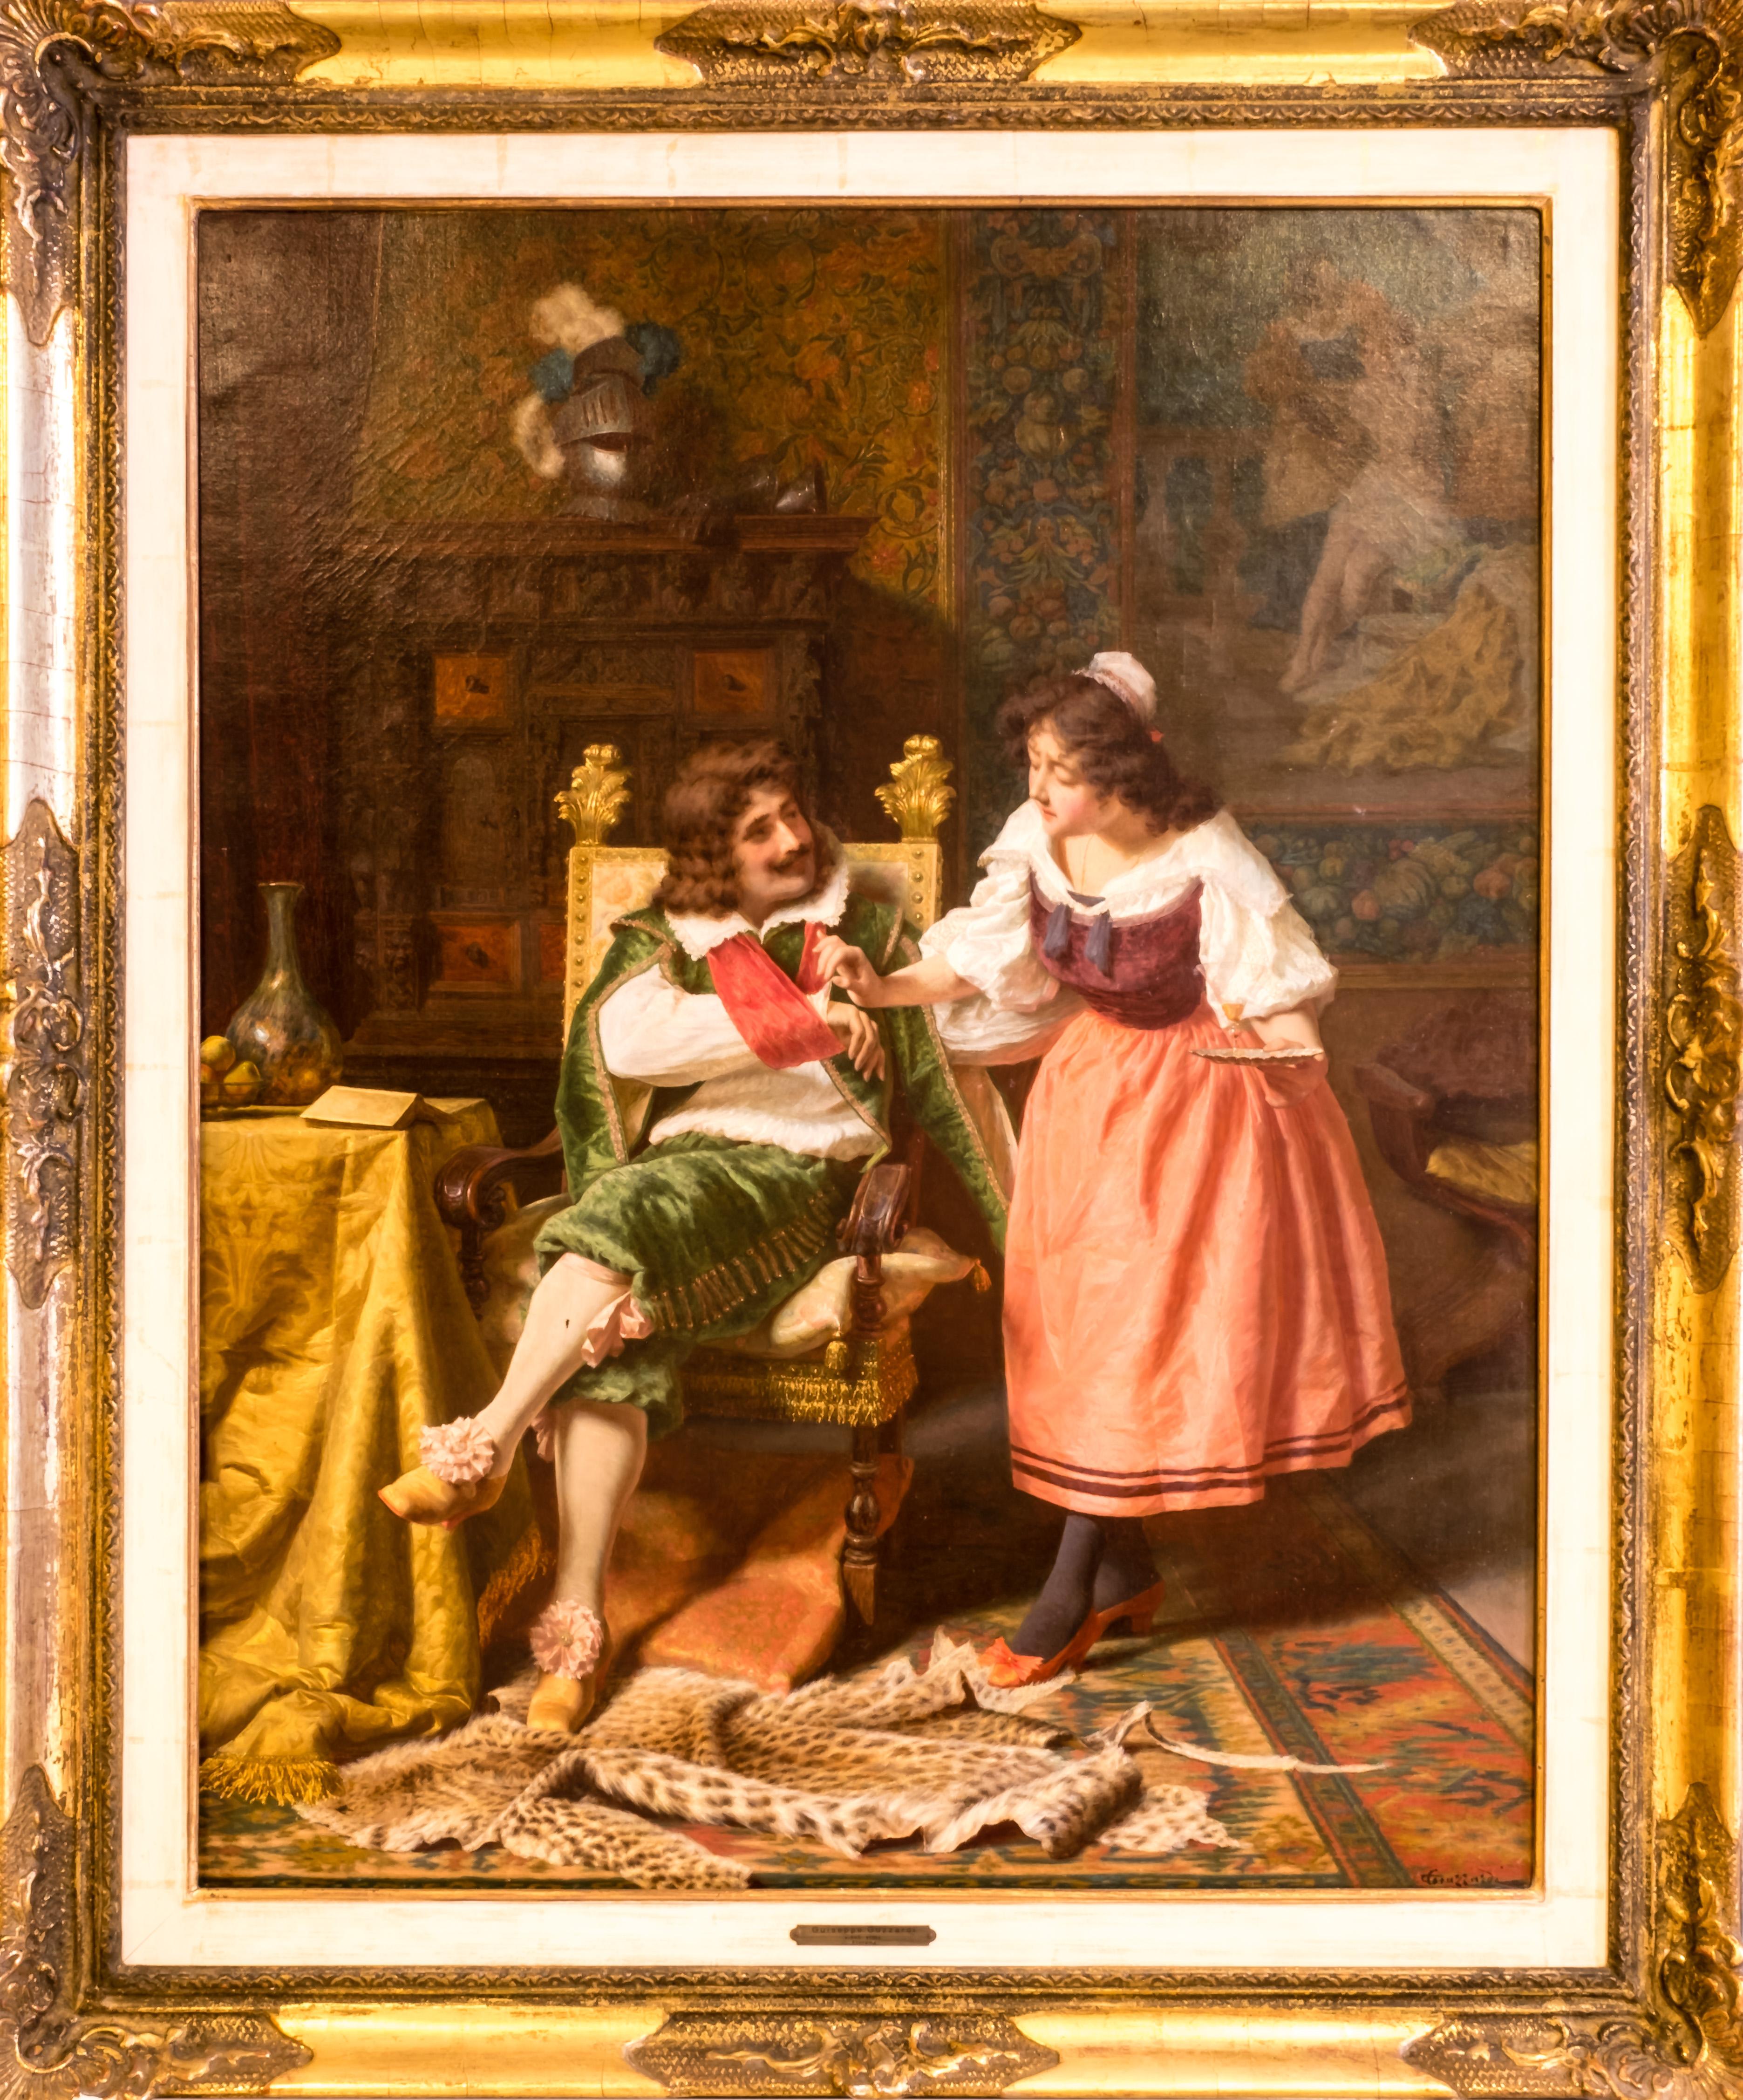 Une peinture de genre du XIXe siècle dont la scène colorée se déroule dans une salle de lecture, où le noble élégamment vêtu, qui a récemment combattu dans une bataille (référence au casque et à l'armure en arrière-plan), a subi une blessure au